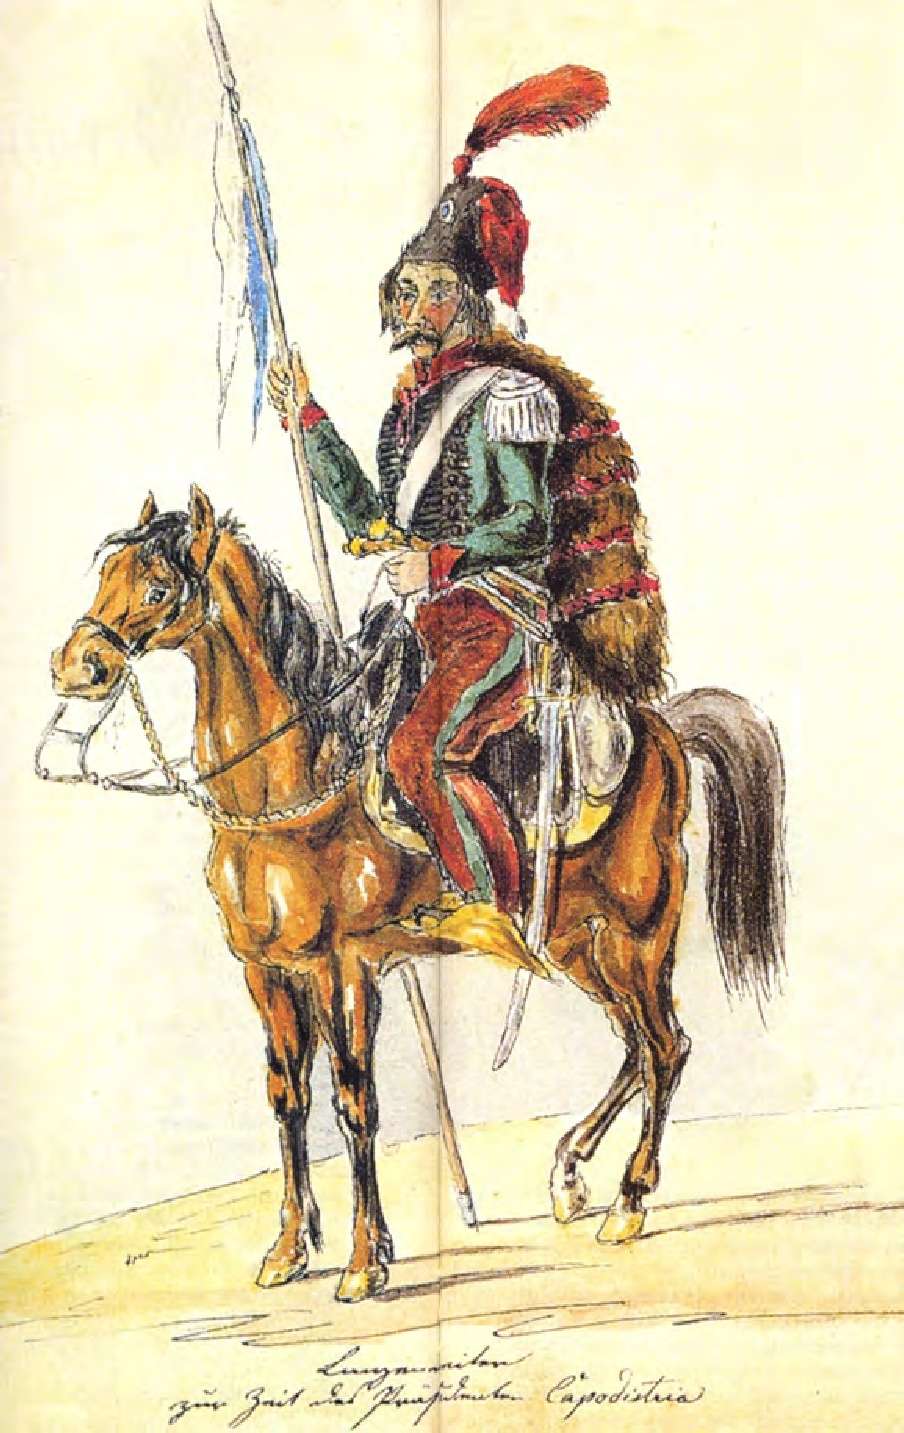 Έφιππος αξιωματικός. Έργο του Adalbert Marc, 1833-35. Βαυαρικό Στρατιωτικό Μουσείο.